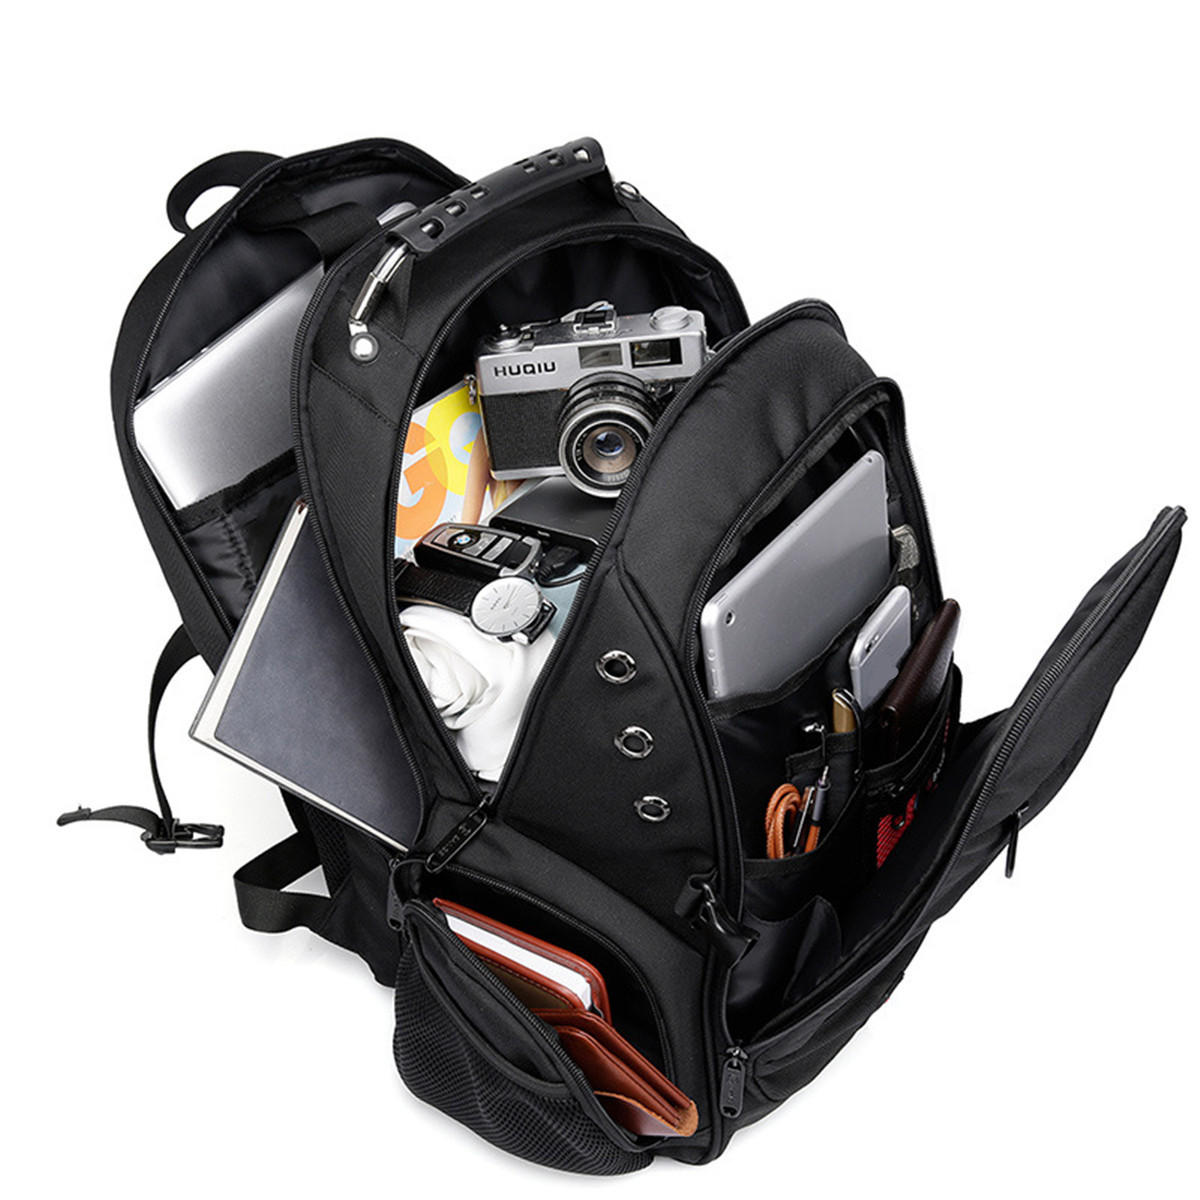 40L Men USB Port Backpack Waterproof Shoulder School Bag Laptop Travel Rucksack